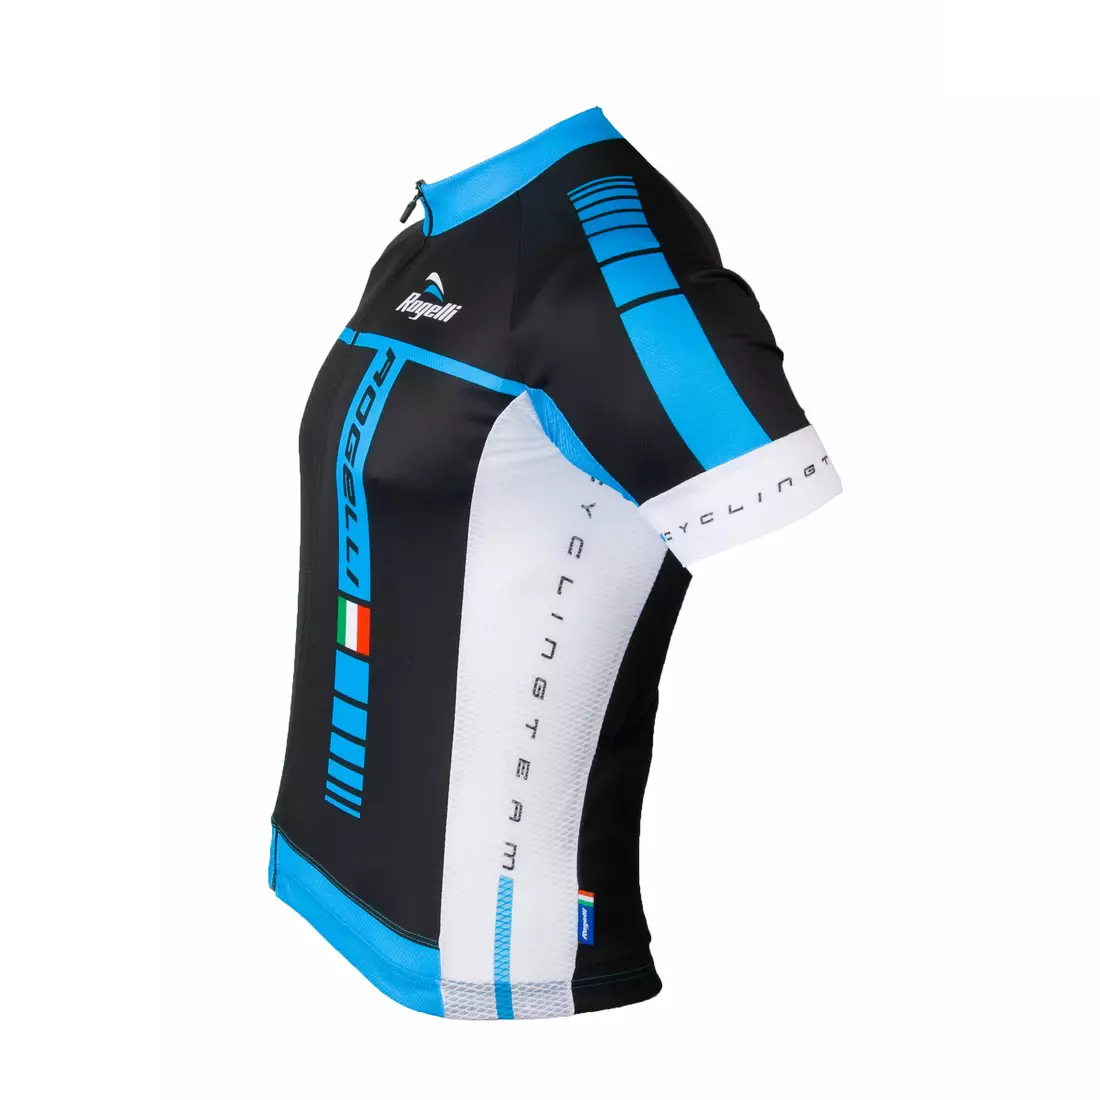 Pánský cyklistický dres ROGELLI UMBRIA, 001.229, černo-modrý